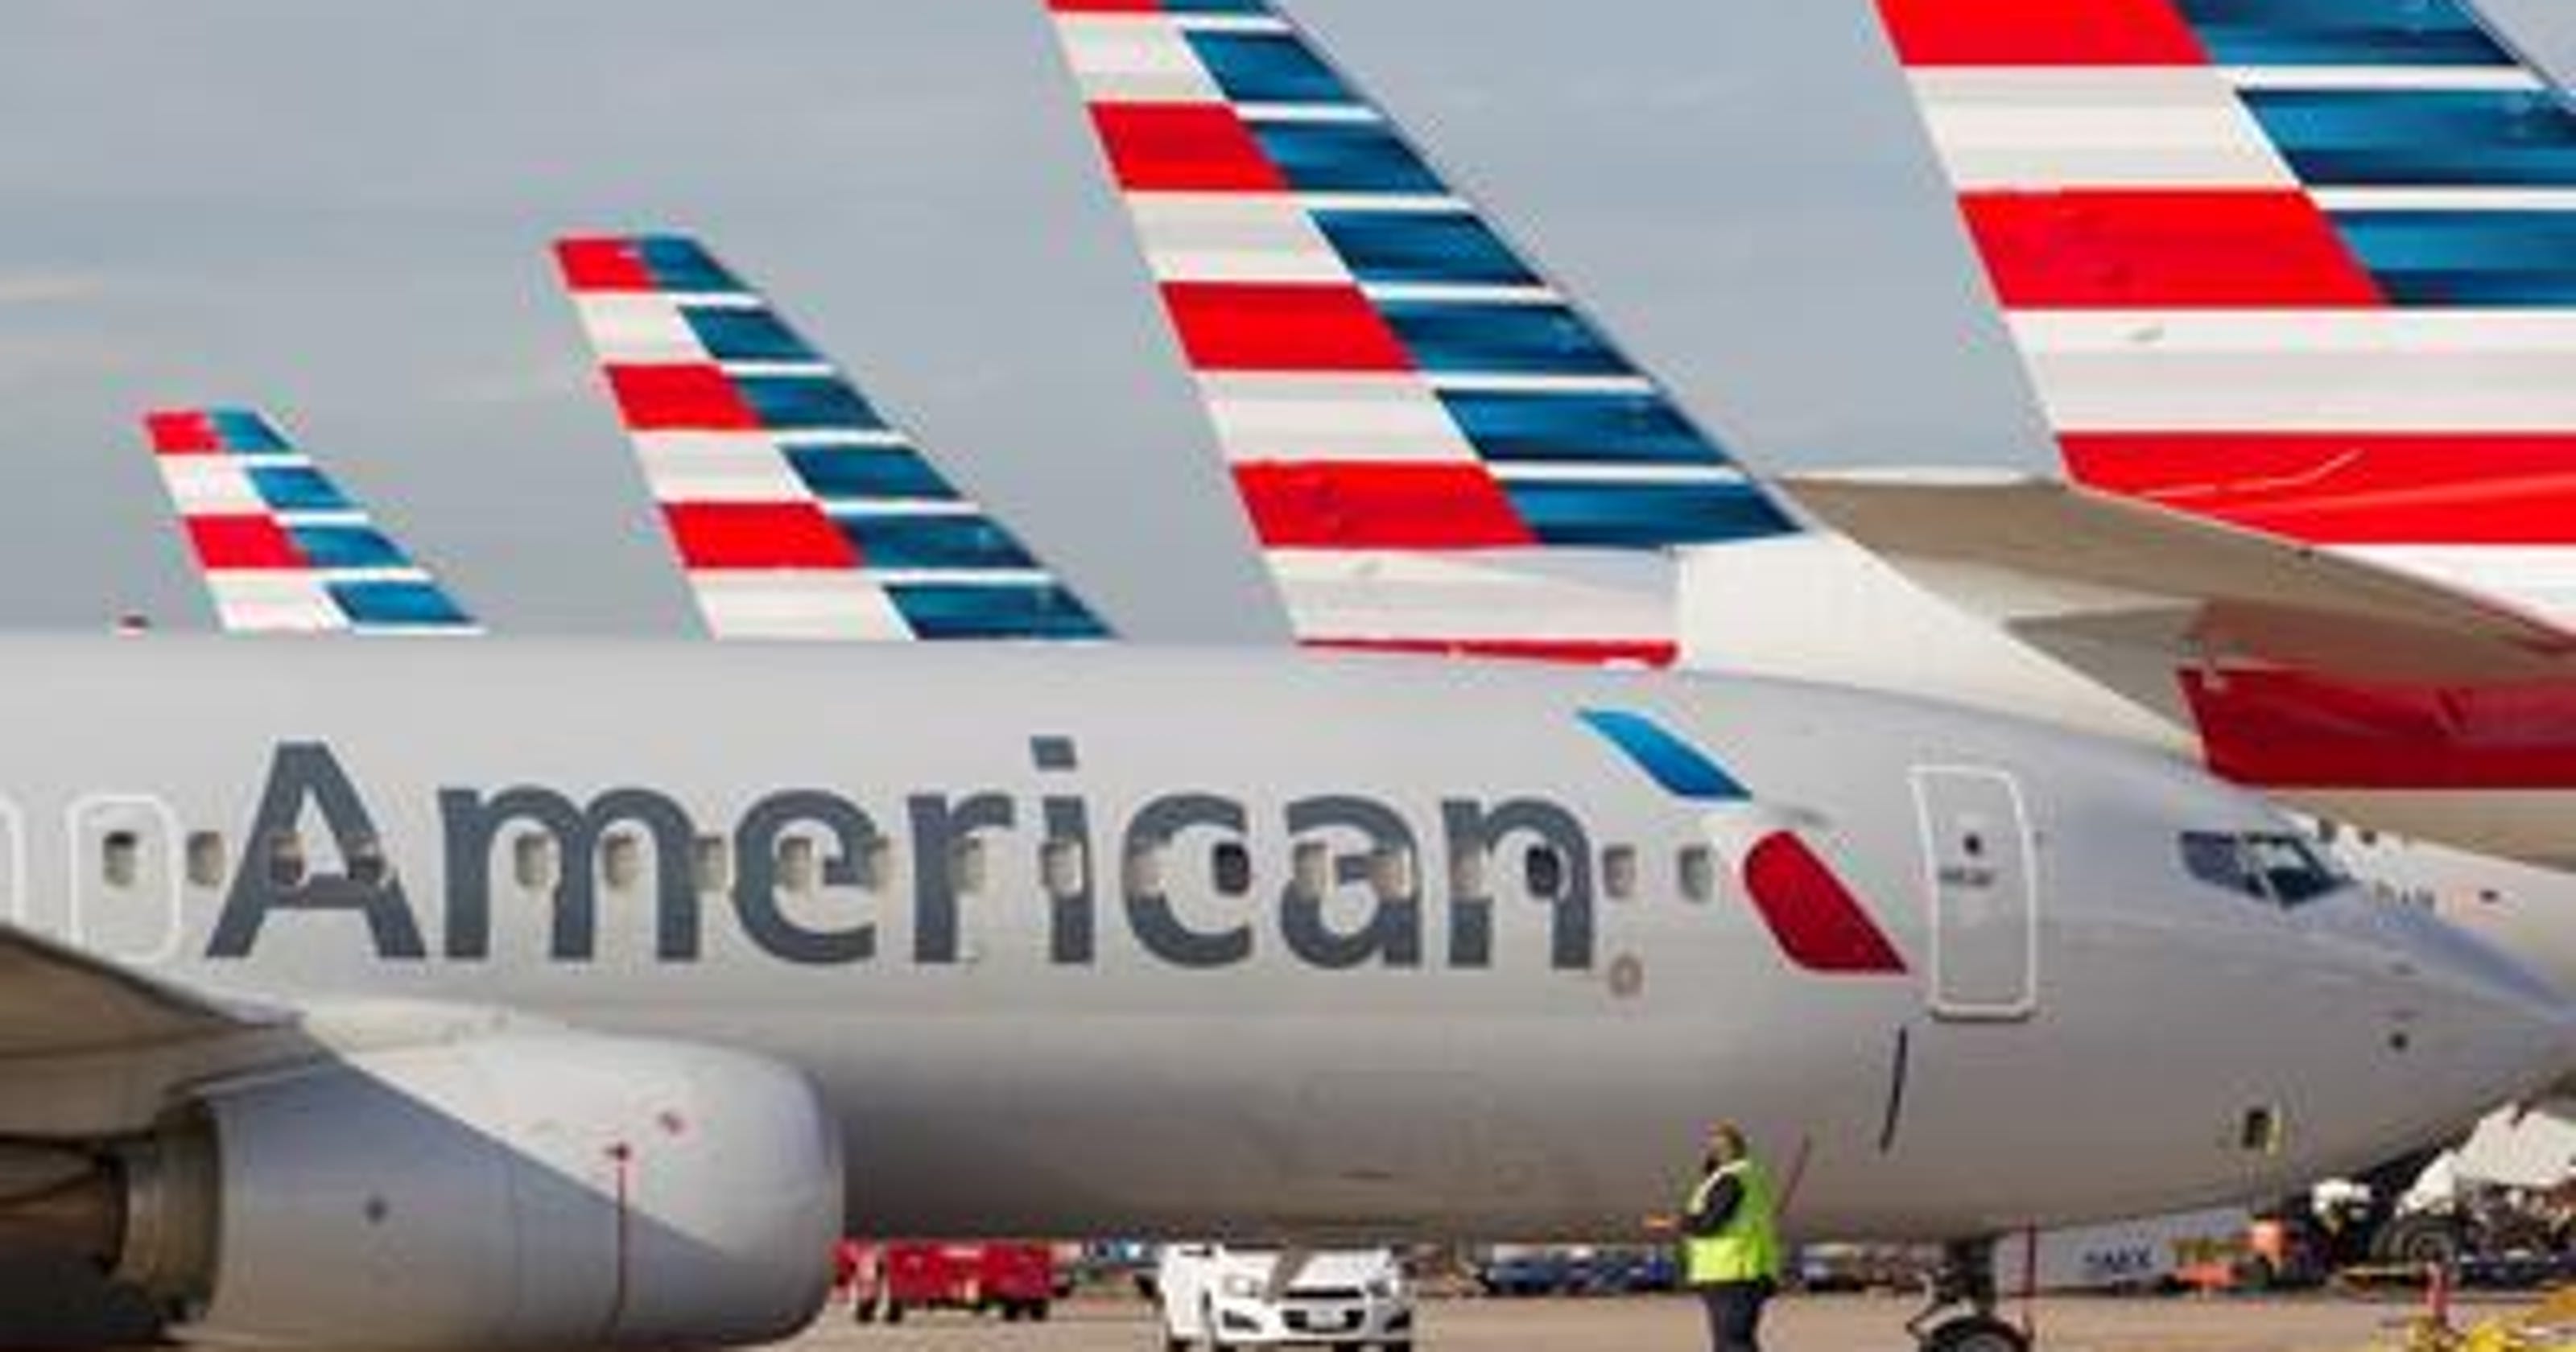 Î‘Ï€Î¿Ï„Î­Î»ÎµÏƒÎ¼Î± ÎµÎ¹ÎºÏŒÎ½Î±Ï‚ Î³Î¹Î± American Airlines is doubling flight service from Palm Springs to Chicago in October 2018